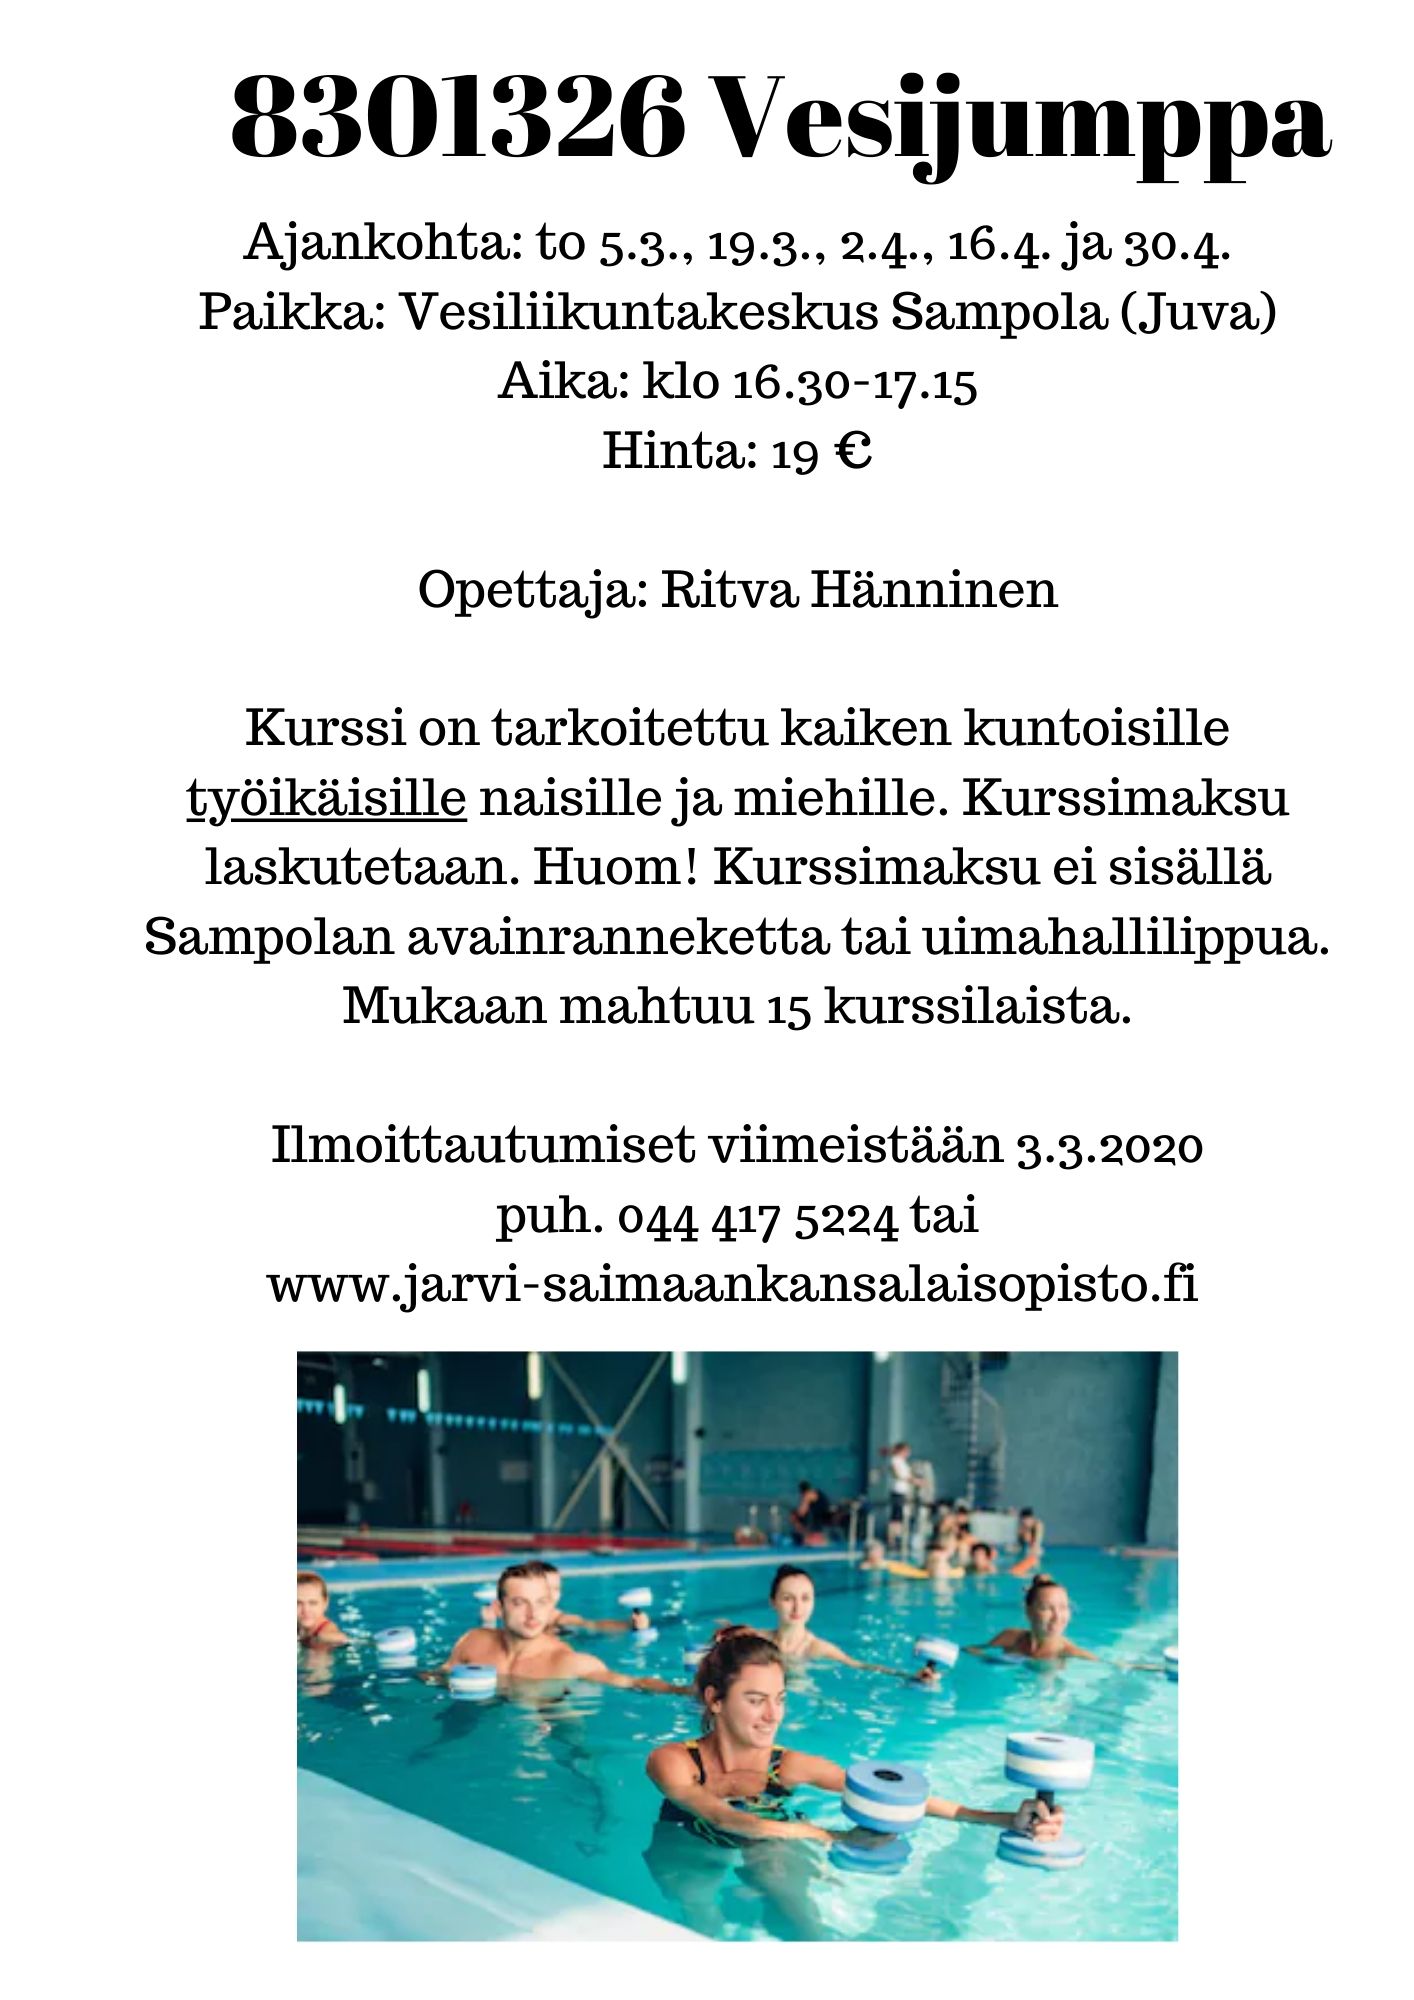 Järvi-Saimaan kansalaisopiston vesijumppa työikäisille alkaa 5.3.